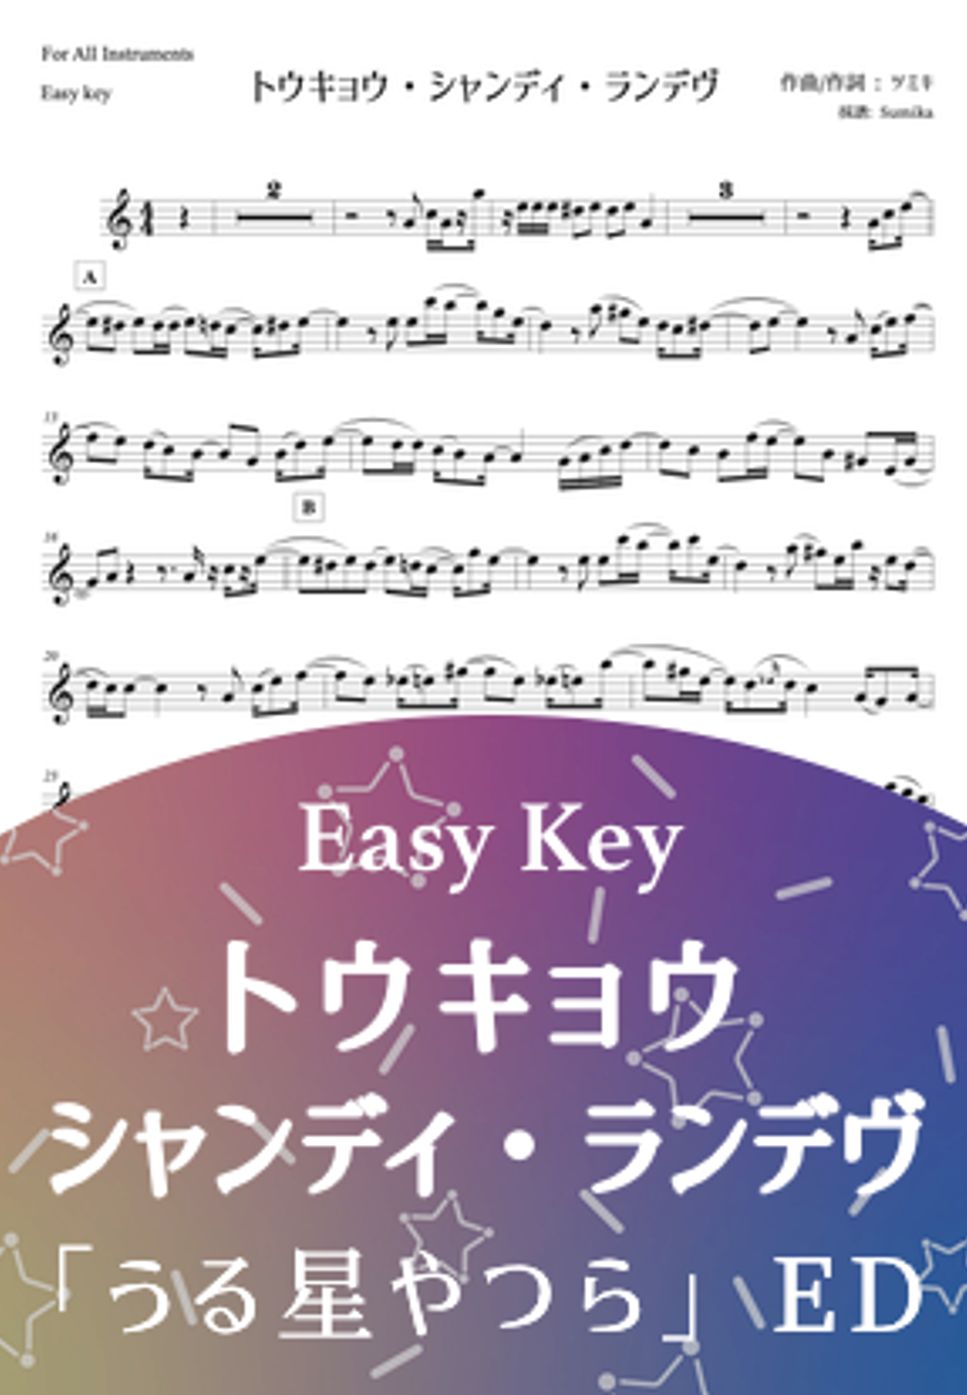 うる星やつら - トウキョウ・シャンディ・ランデヴ (in C, Bb, Eb - easy key) by Sumika